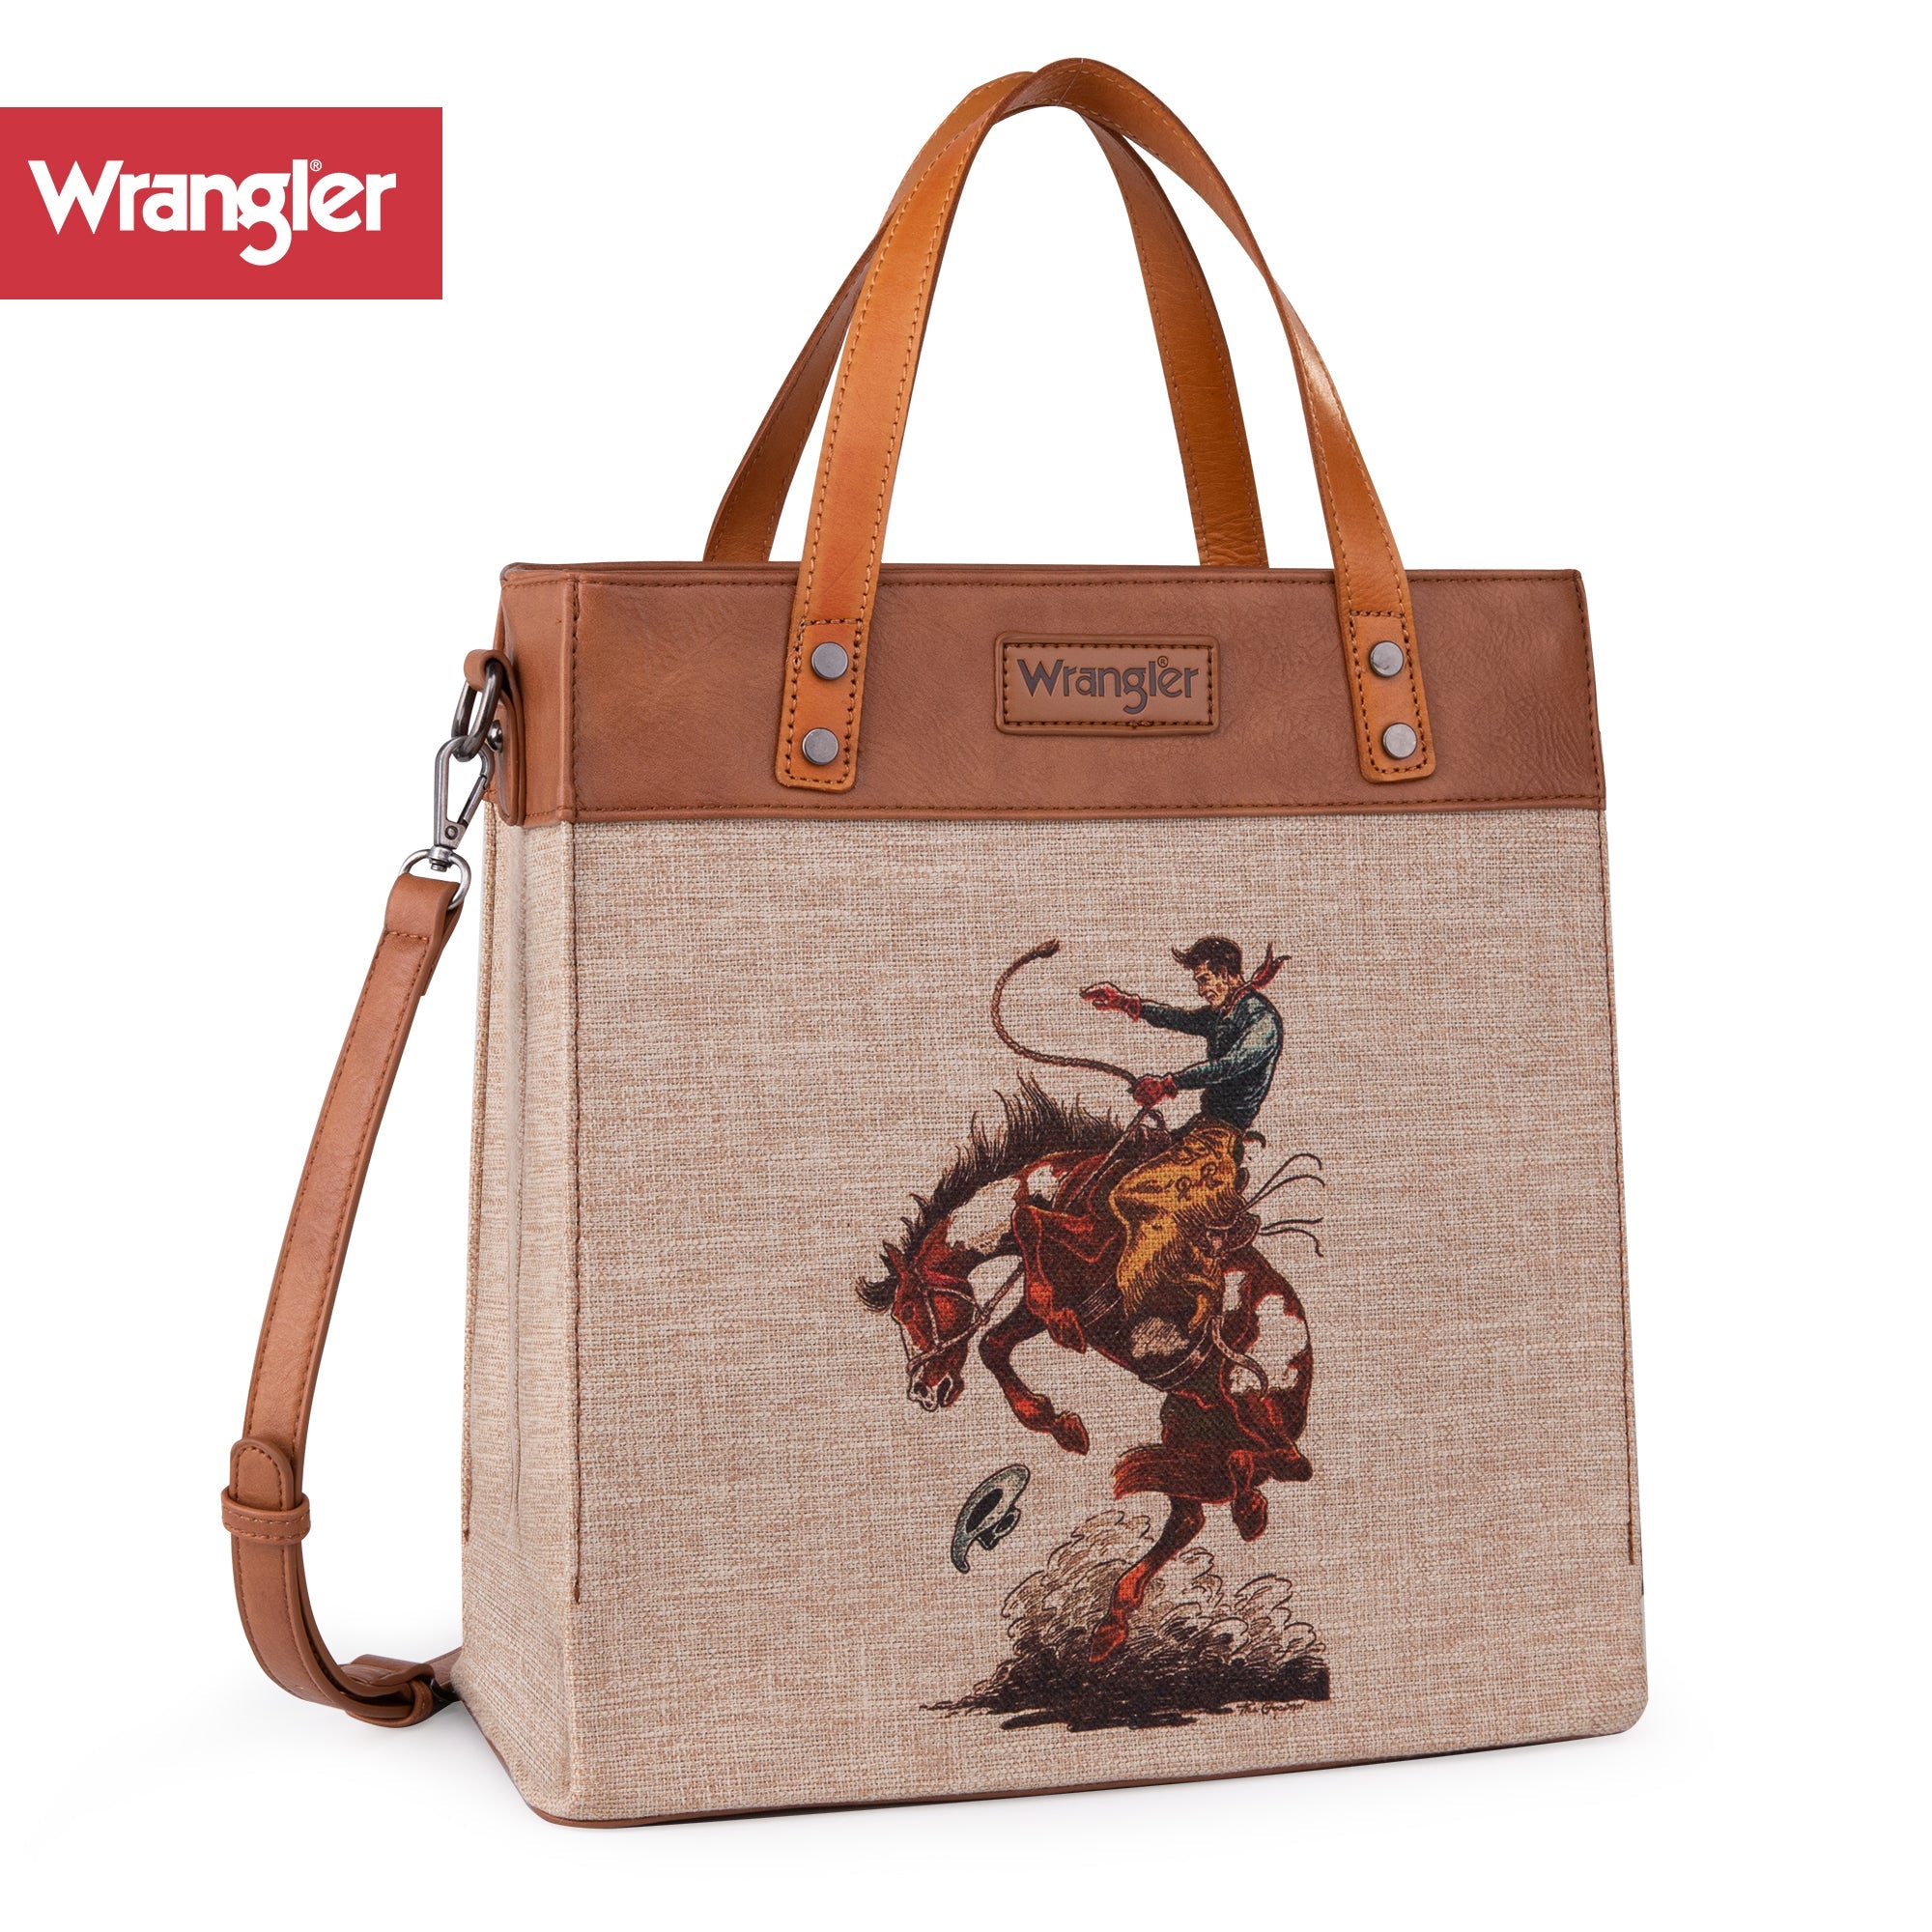 [Best Seller]Wrangler Tote Bag for Women Zipper Shoulder Handbag Coffee